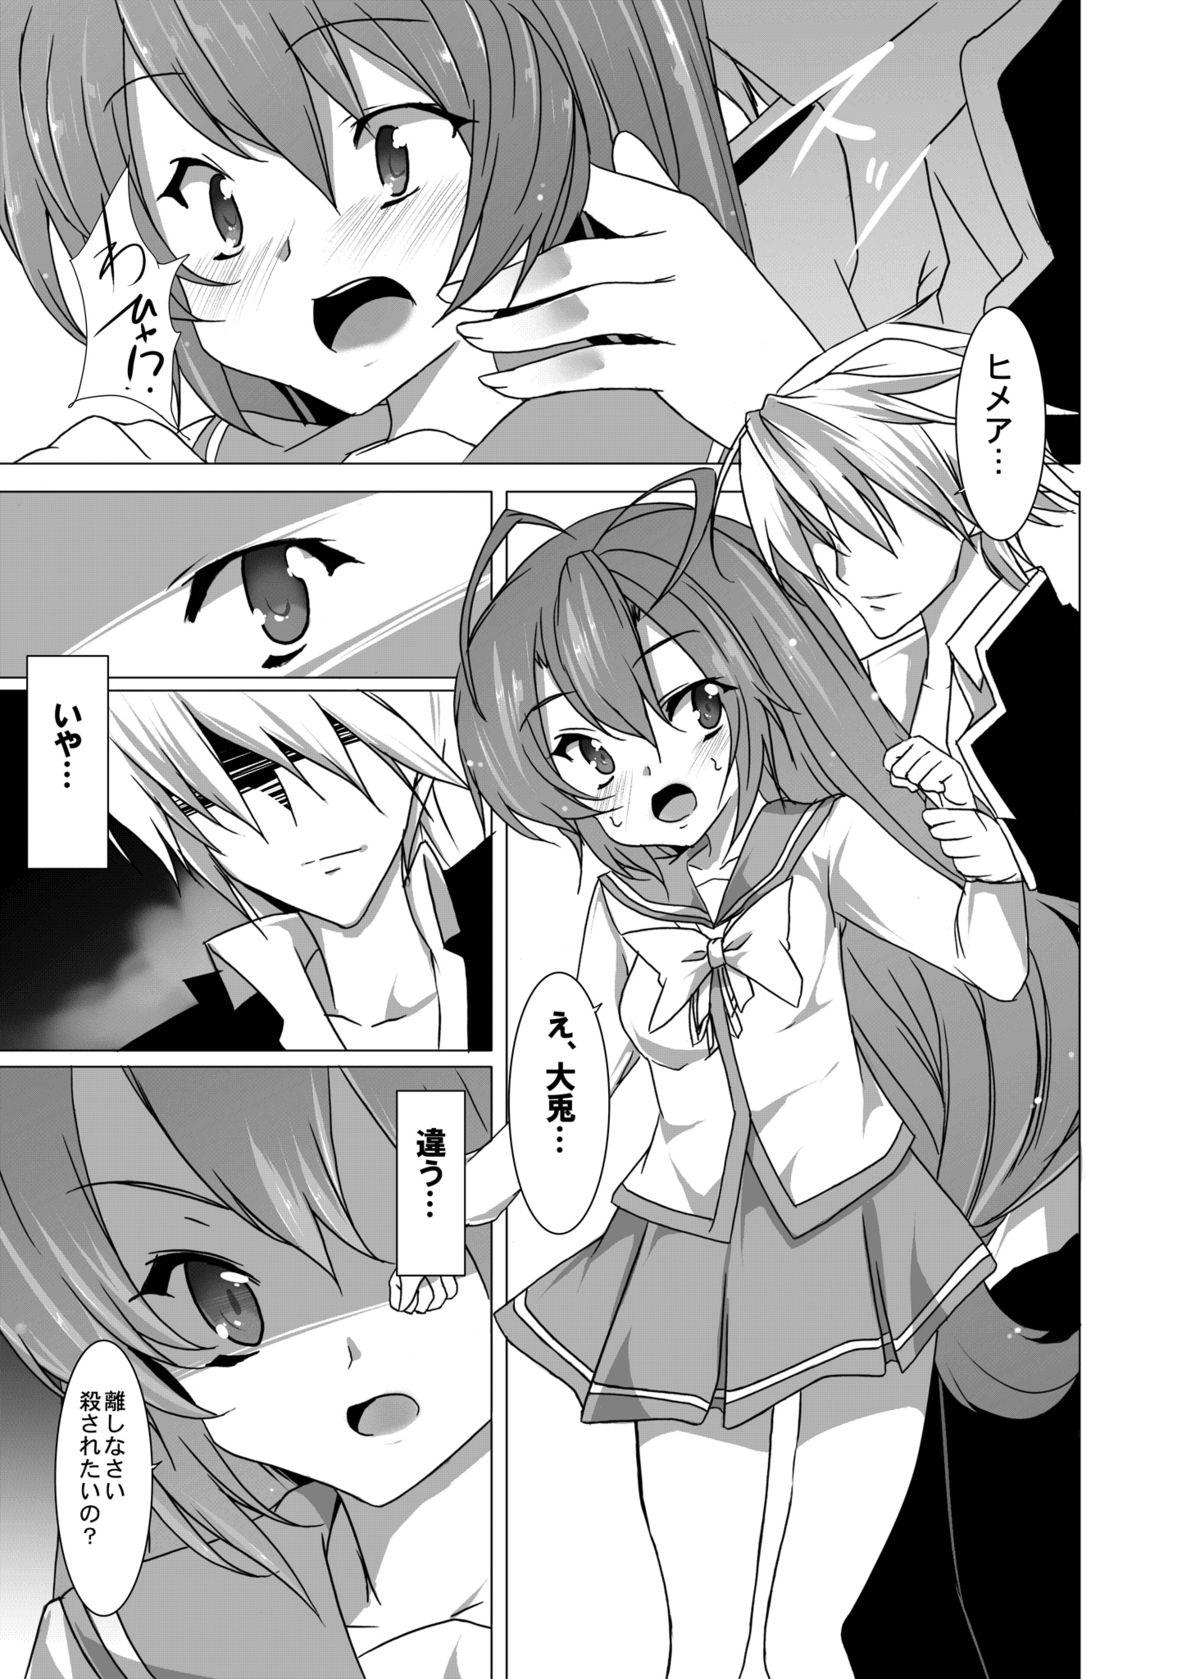 Sexy Yumeiro Communication - Itsuka tenma no kuro usagi Student - Page 6